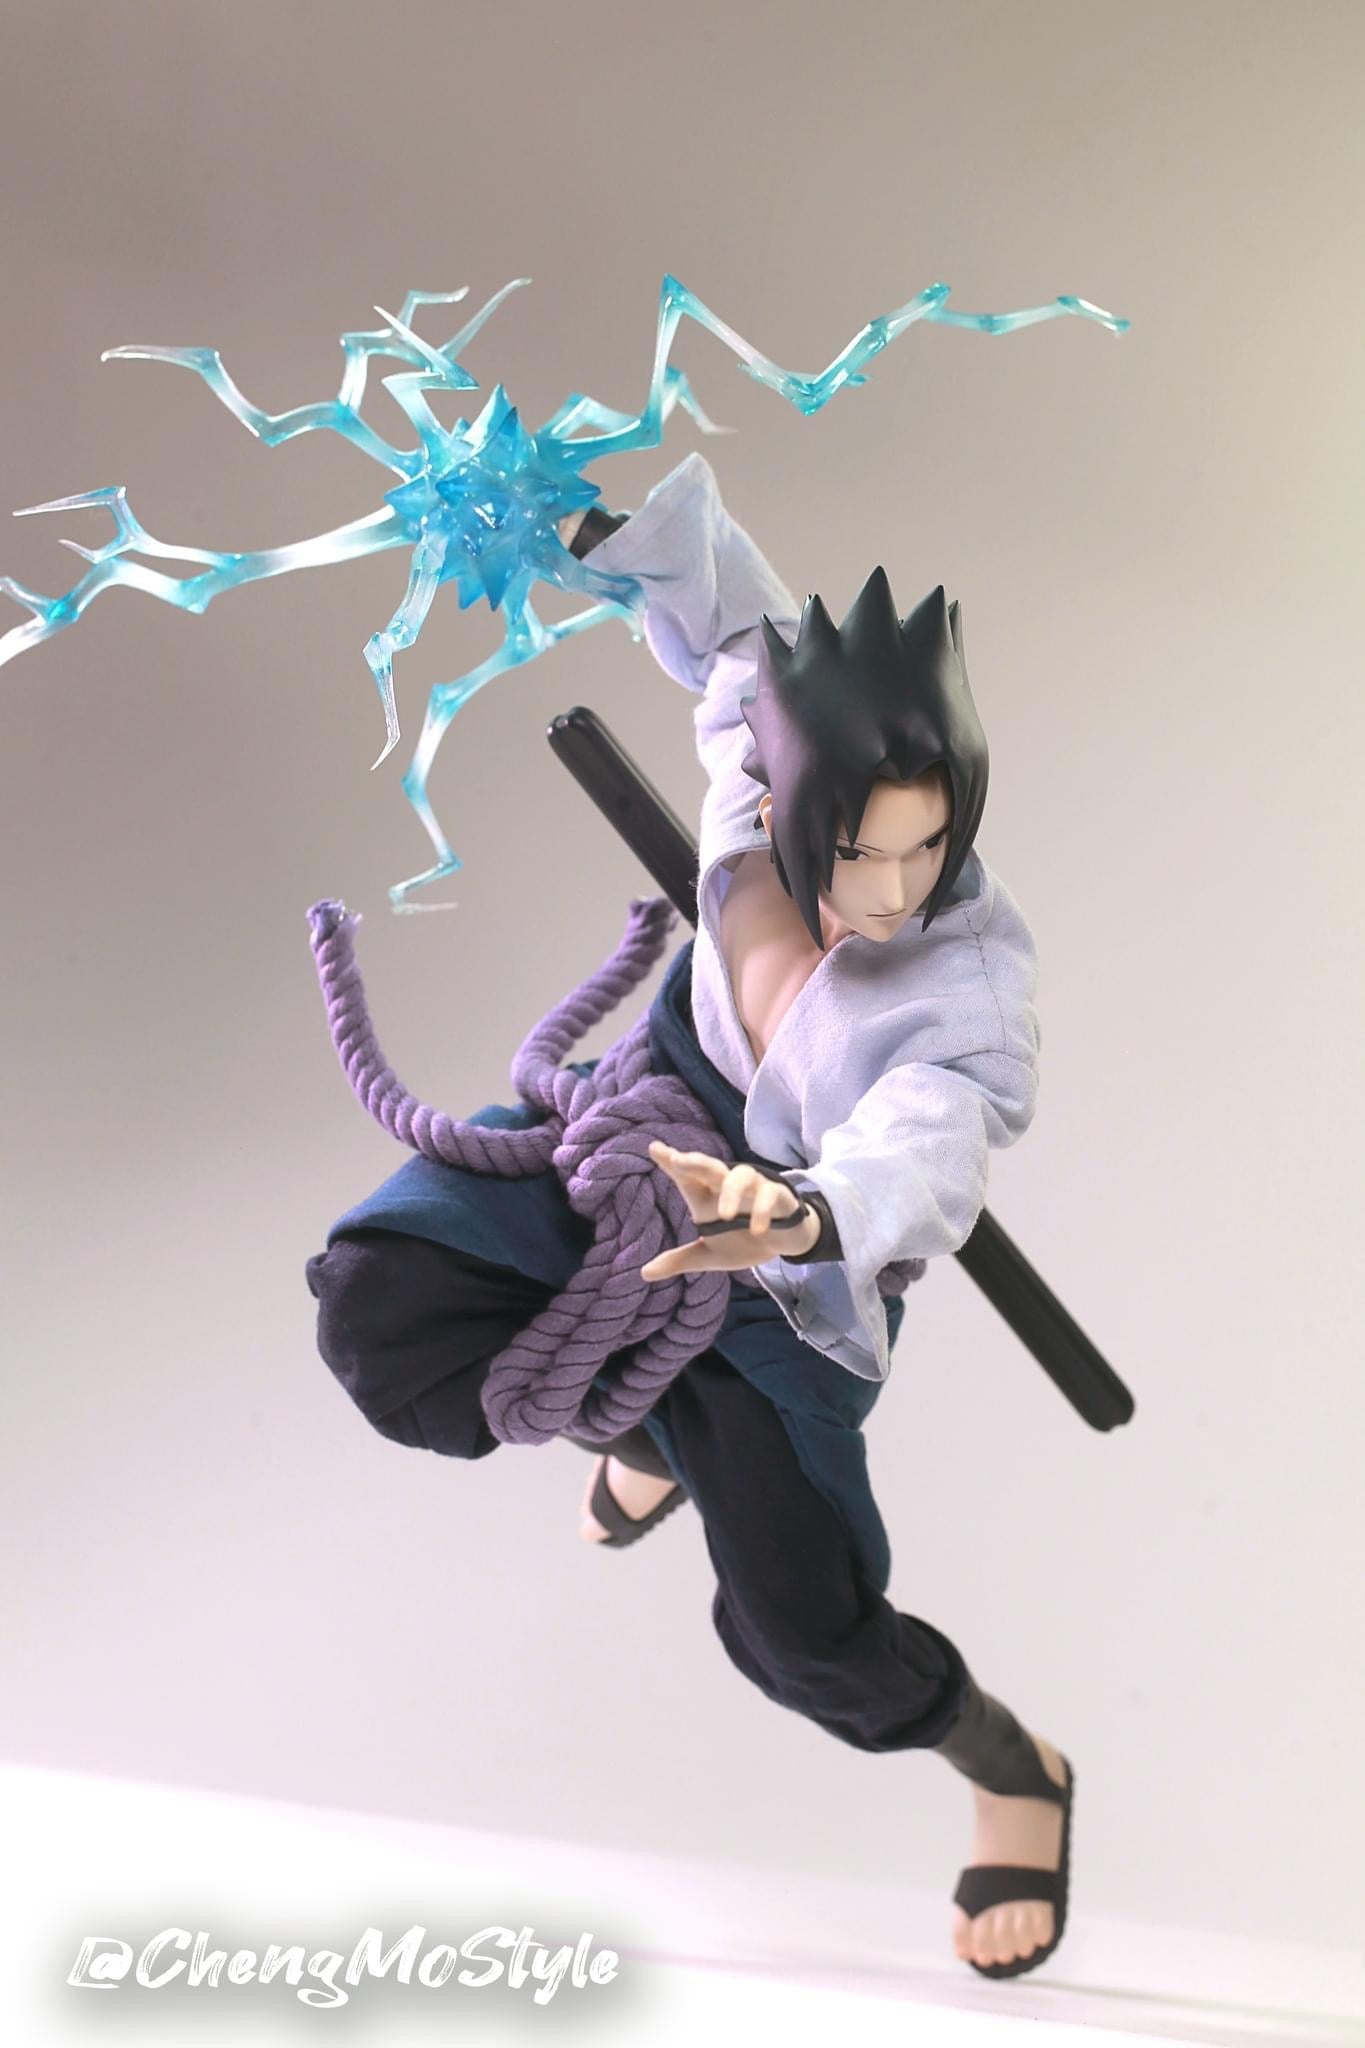 Pedido Figura Sasuke Uchiha - Naruto Shippuden marca Zen Creations PAF003 escala 1/6